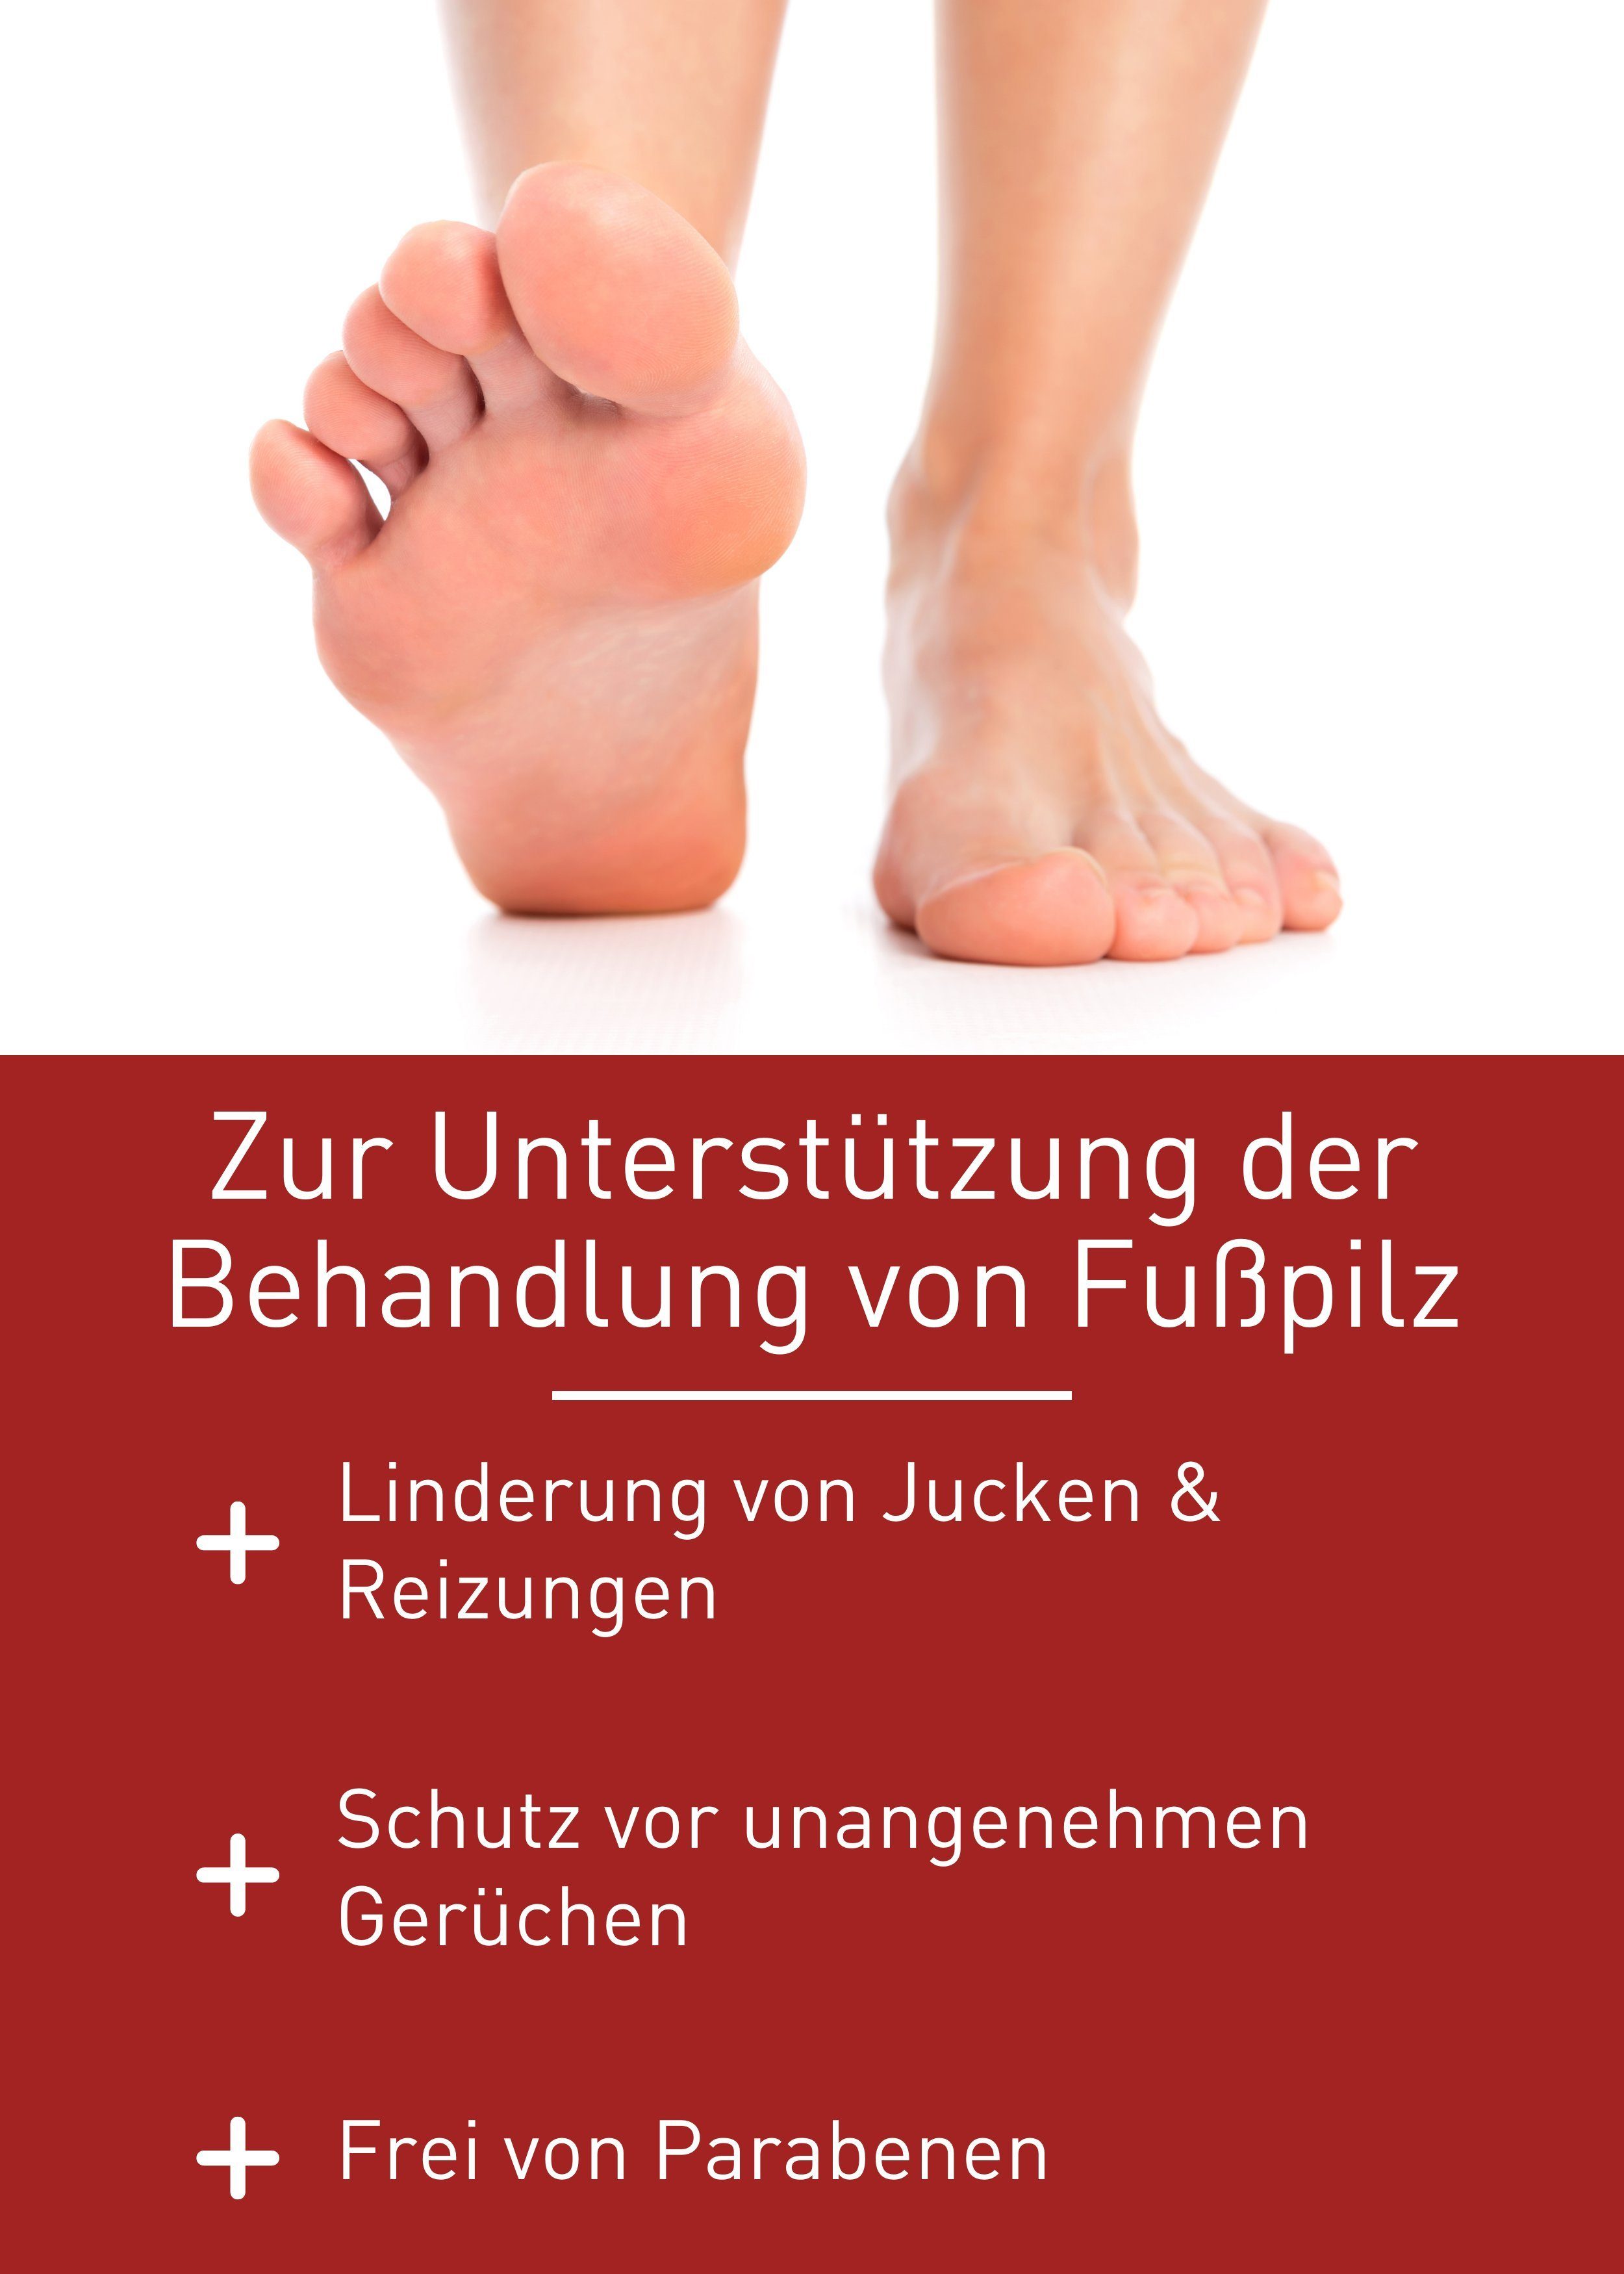 zur Gel Medizinprodukt, Fußpilz Healthcare von Fußpilz, Fußpflegecreme Behandlung N1 patentierte Rezeptur